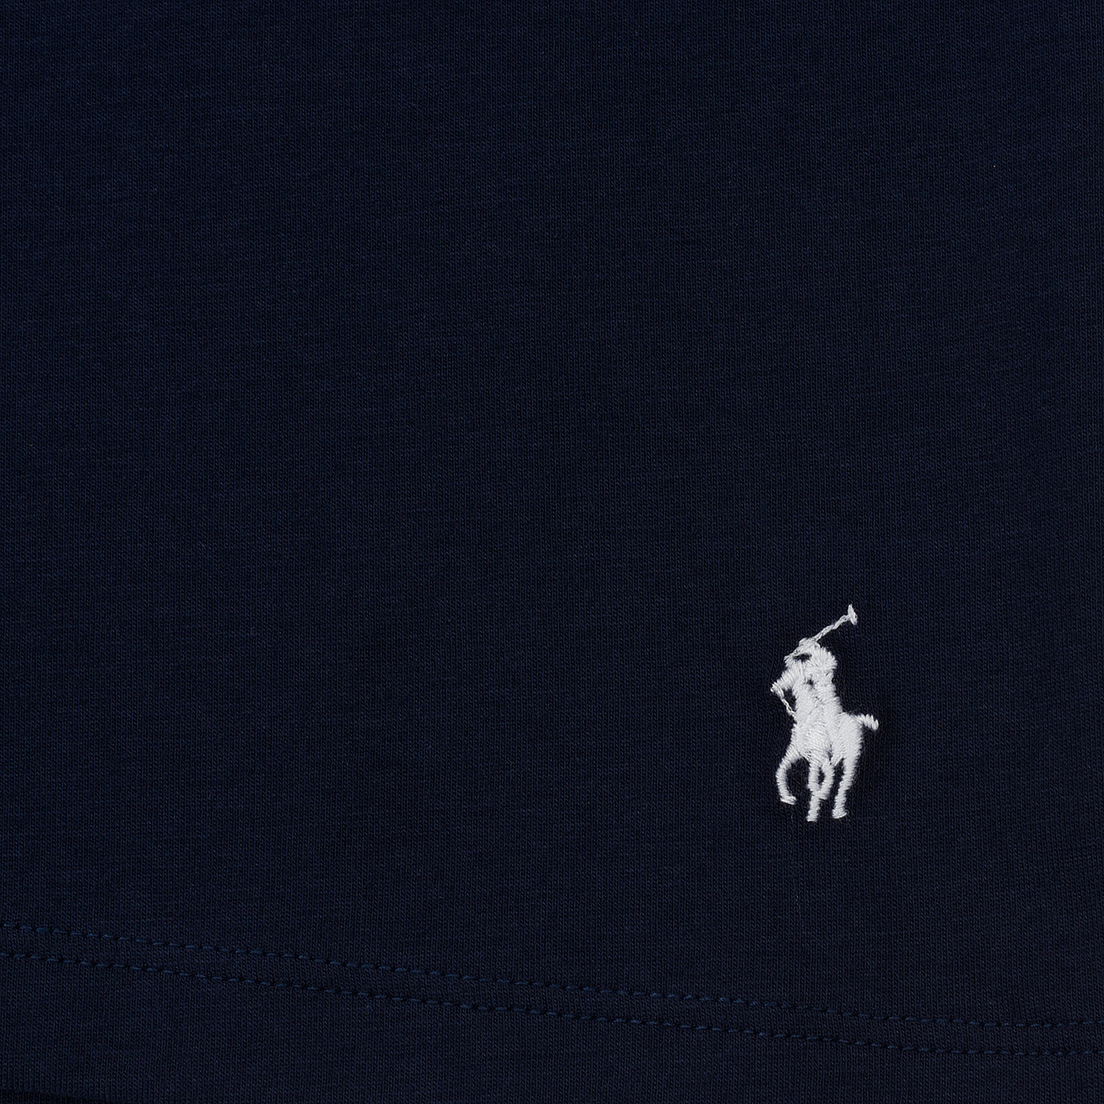 Polo Ralph Lauren Комплект мужских футболок Classic Crew Neck 2-Pack